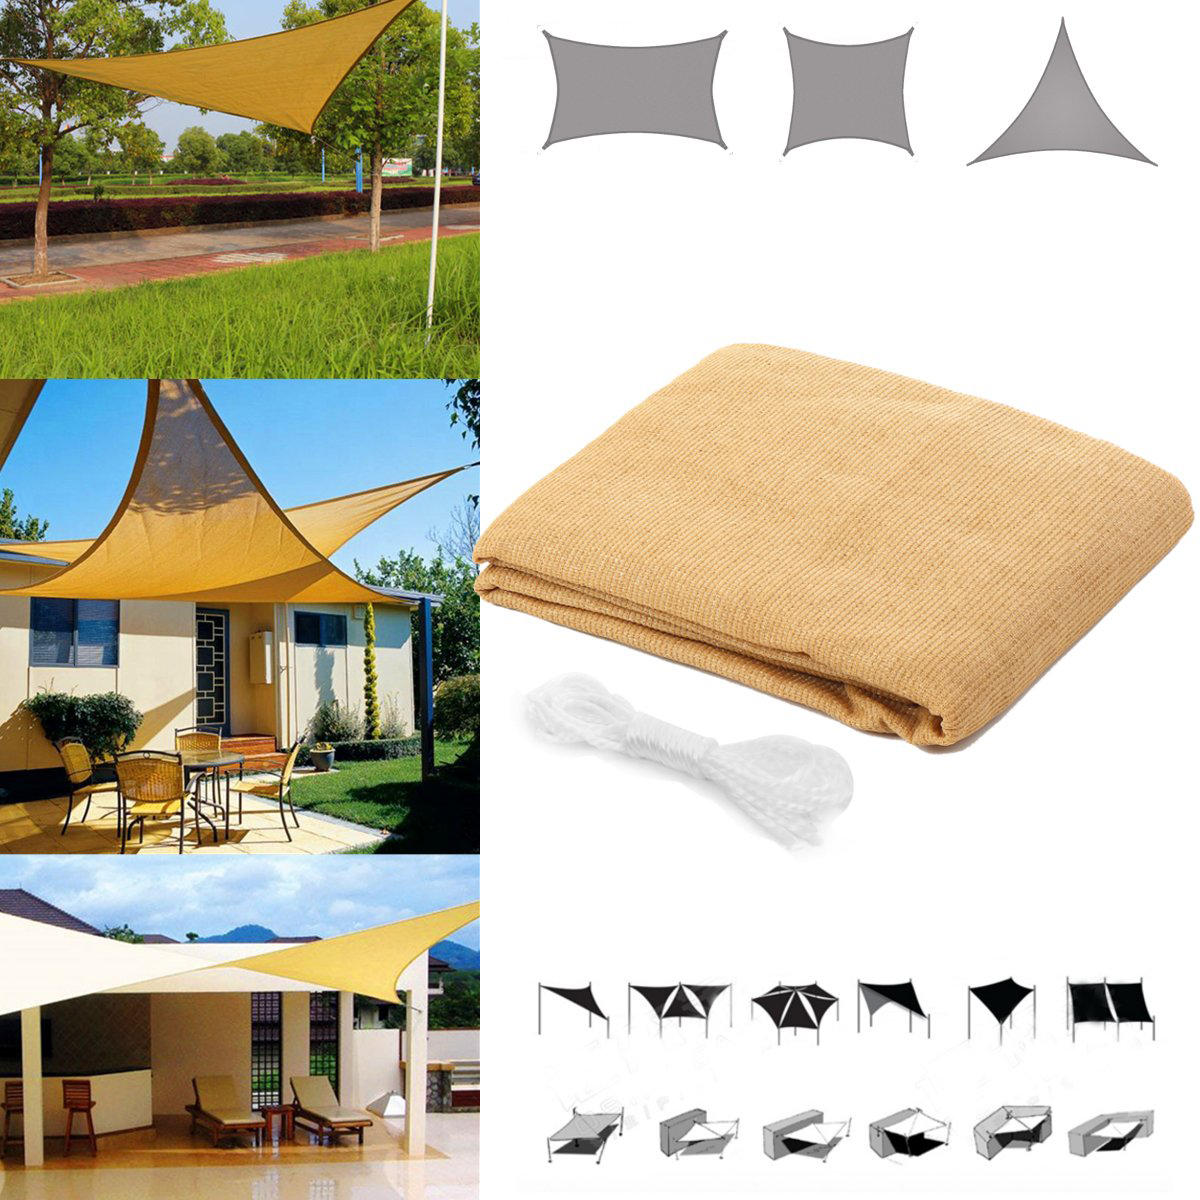 خيمة رباعية / مثلثة للحماية من الشمس ، مضادة للماء ومضادة للأشعة فوق البنفسجية ، مع غطاء للحديقة والفناء والتخييم في الهواء الطلق.